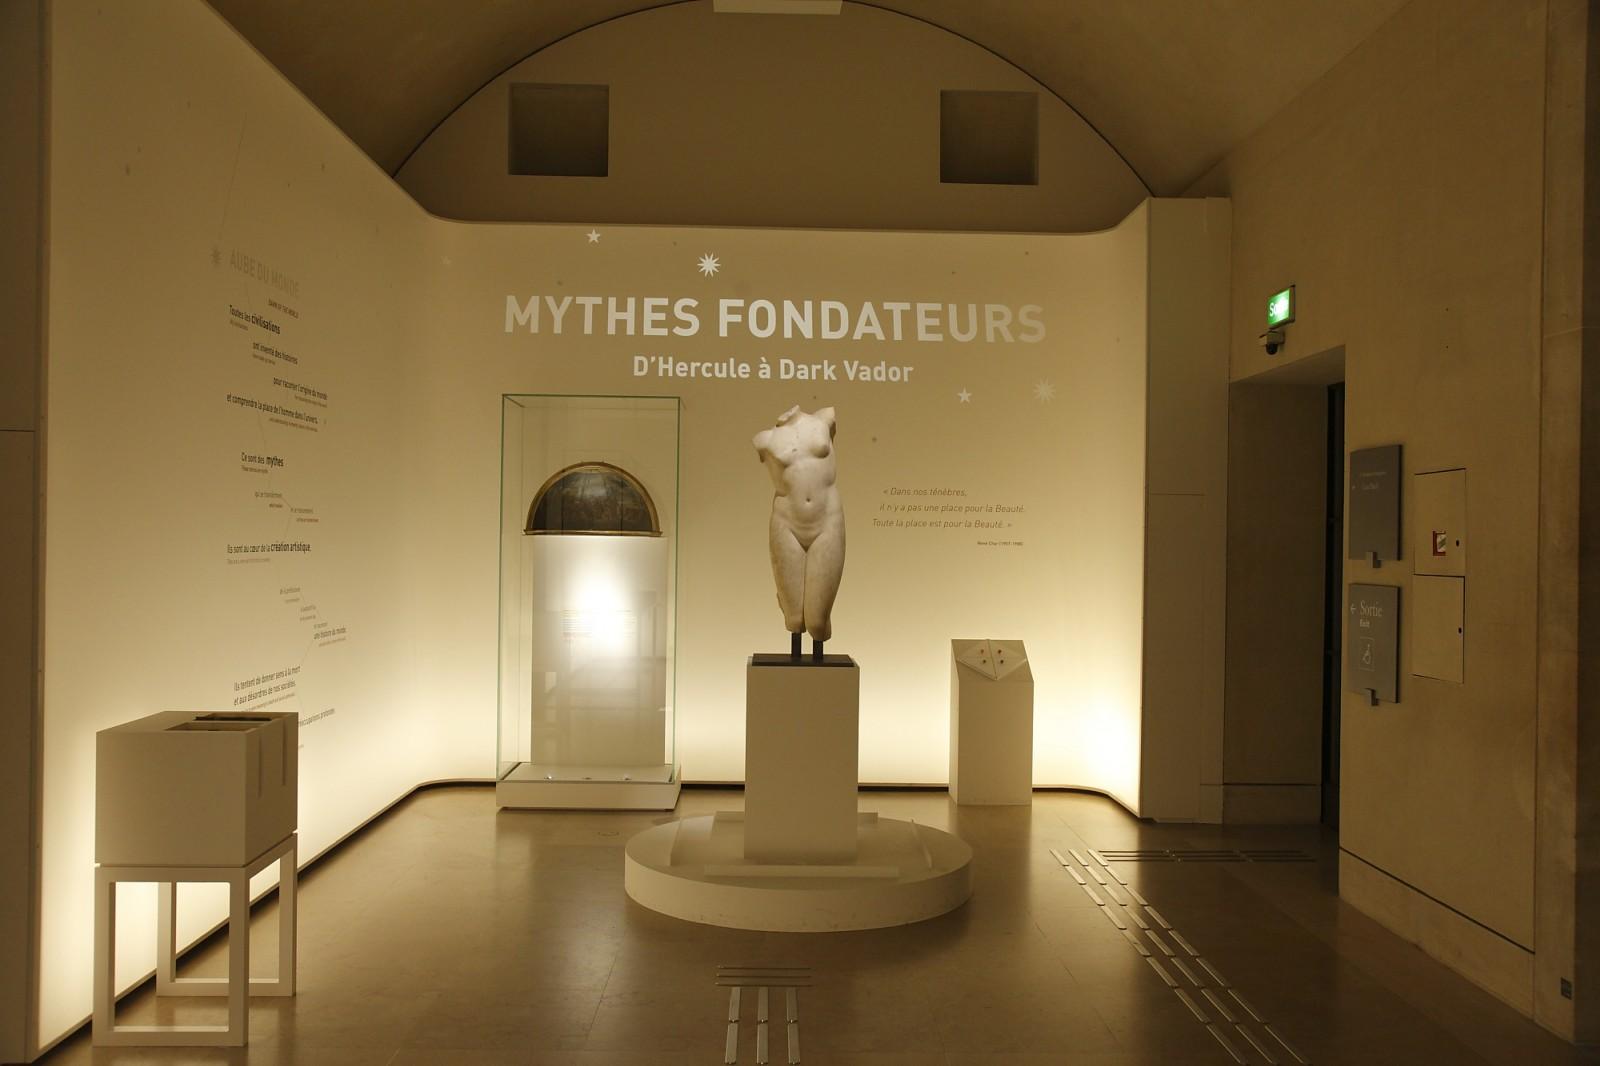 View of the exhibition "La Petite Galerie du Louvre - Les mythes fondateurs", Musée du Louvre, 2015